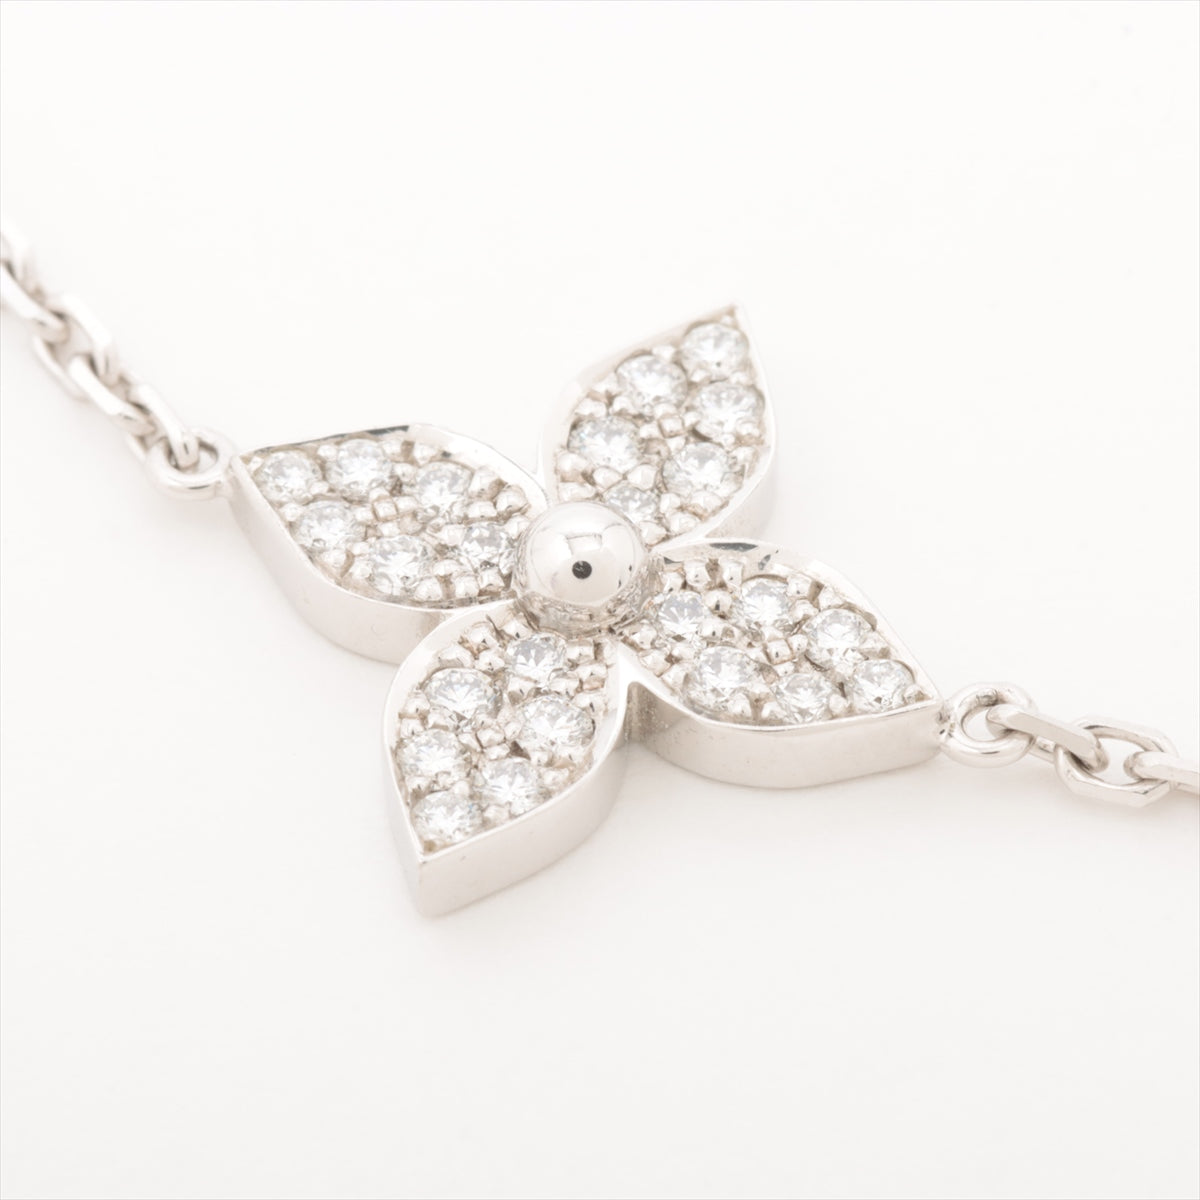 Louis Vuitton Brasserie Star Blossom diamond Bracelet 750(WG) 4.1g